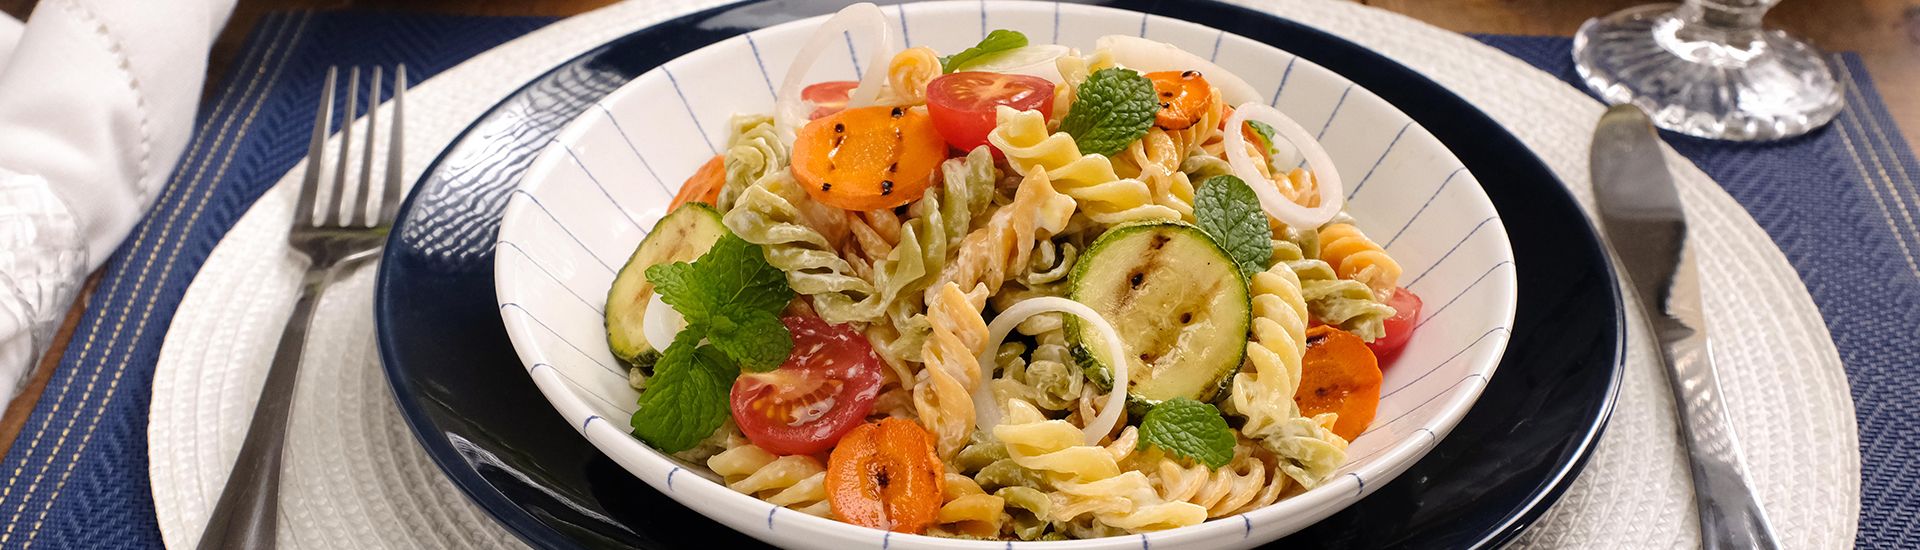 Salada de macarrão com legumes